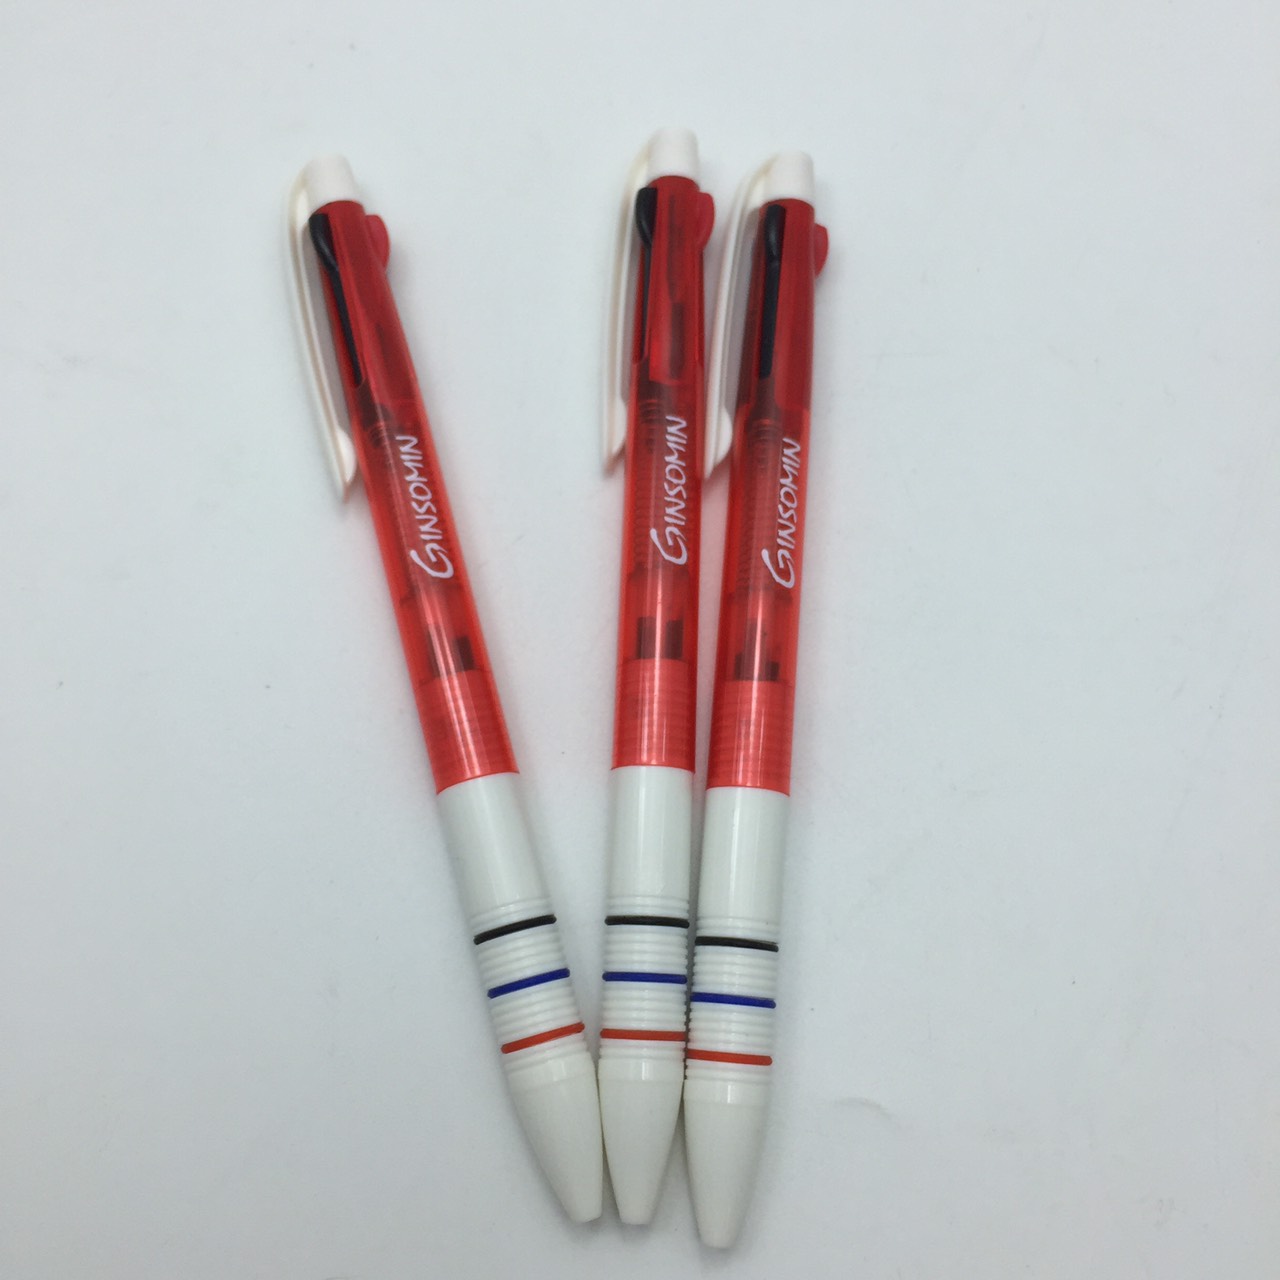 ปากกาพลาสติก PP169